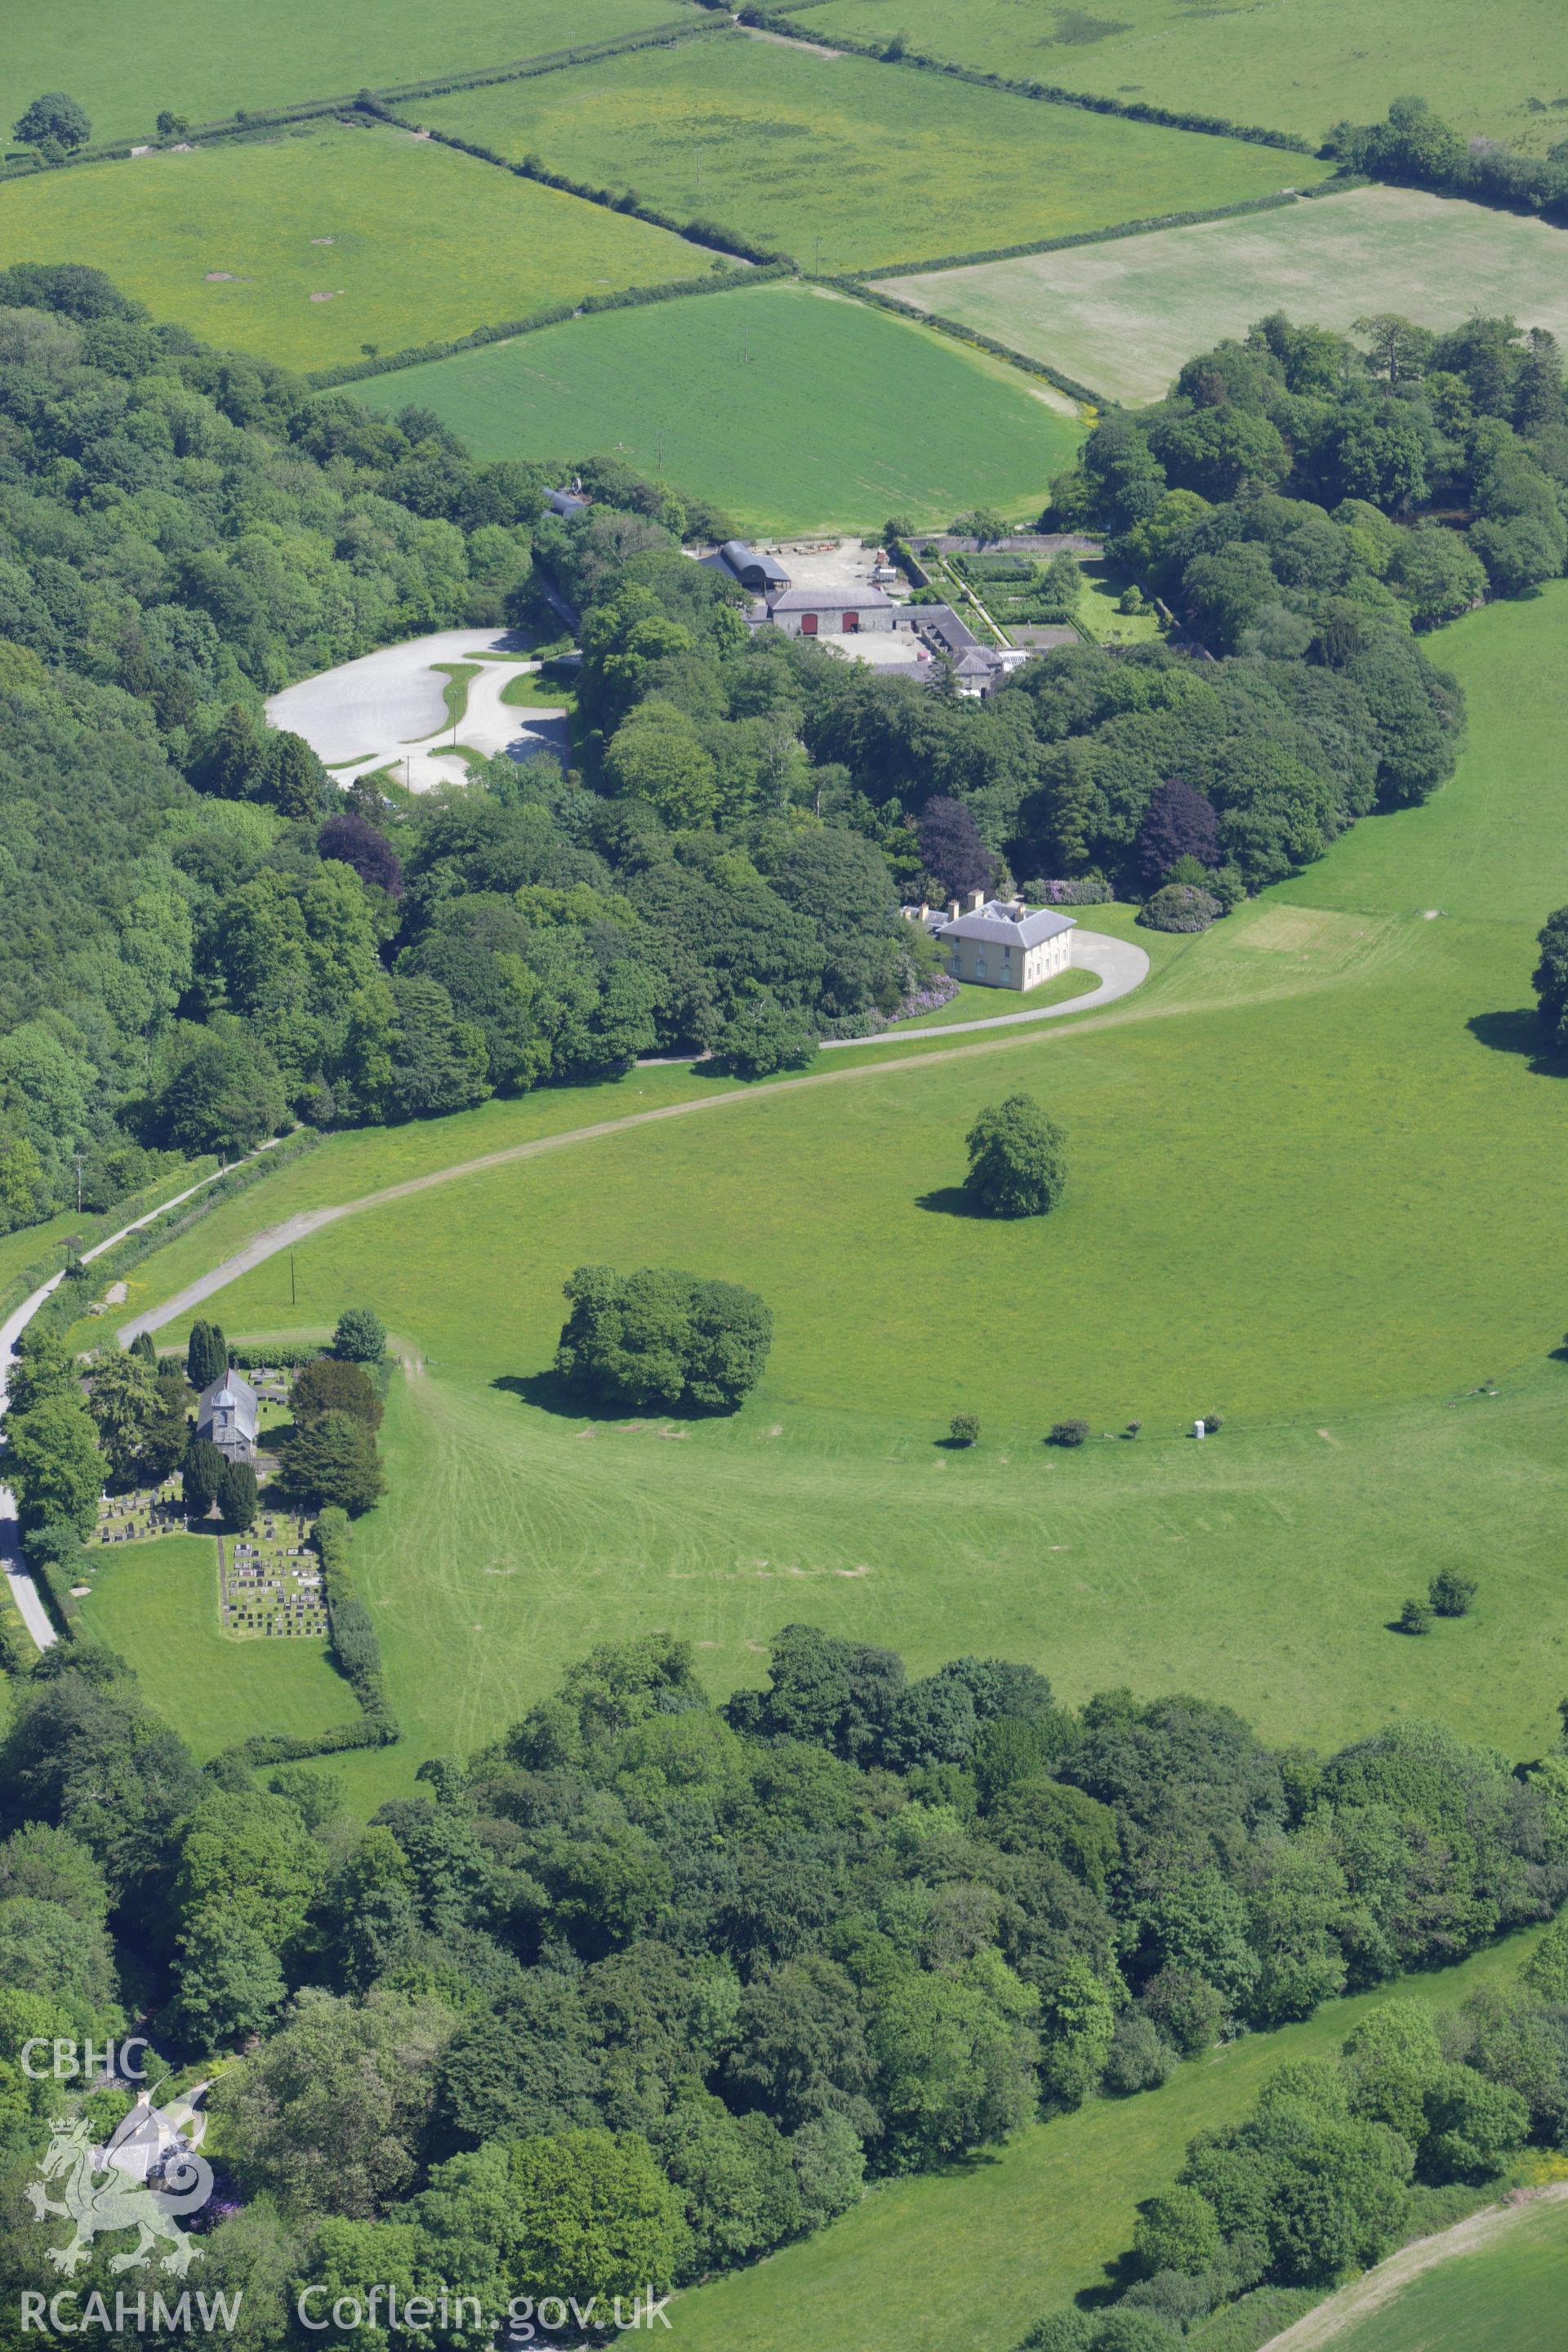 RCAHMW colour oblique aerial photograph of Llanerchaeron House, Plas Llanerchaeron. Taken on 01 June 2009 by Toby Driver